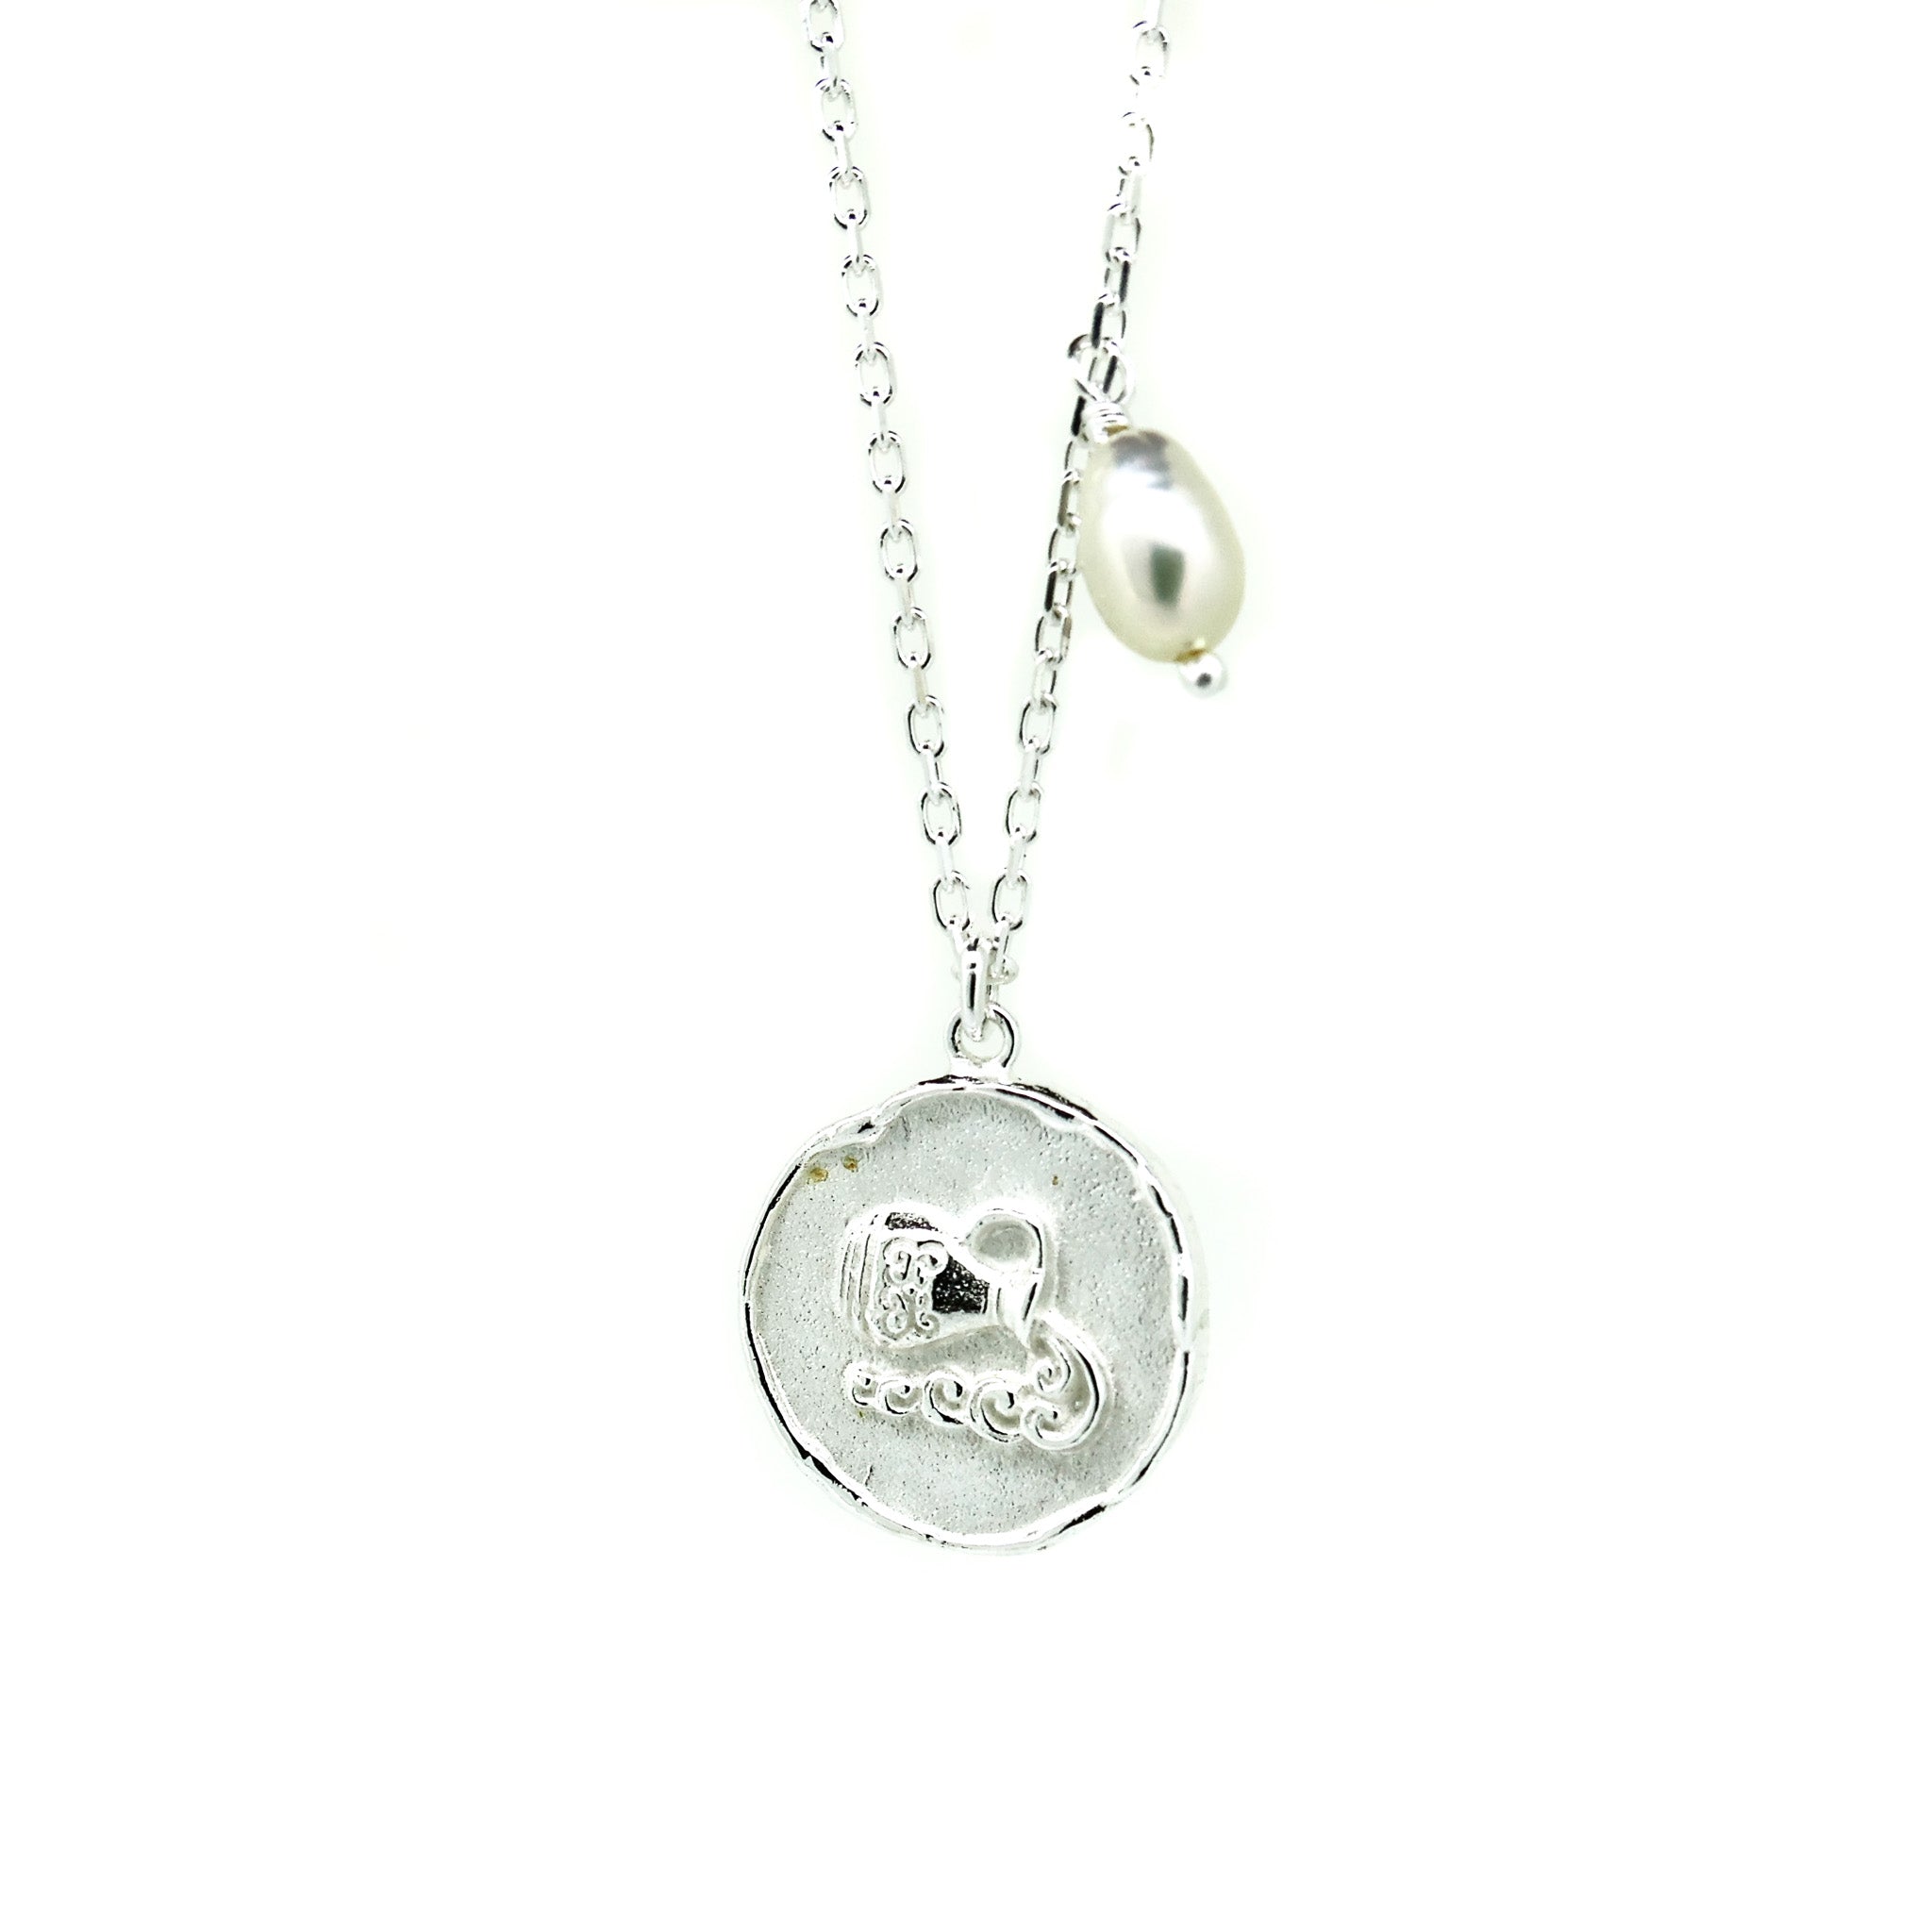 Zodiac aquarius crystal necklace in silver